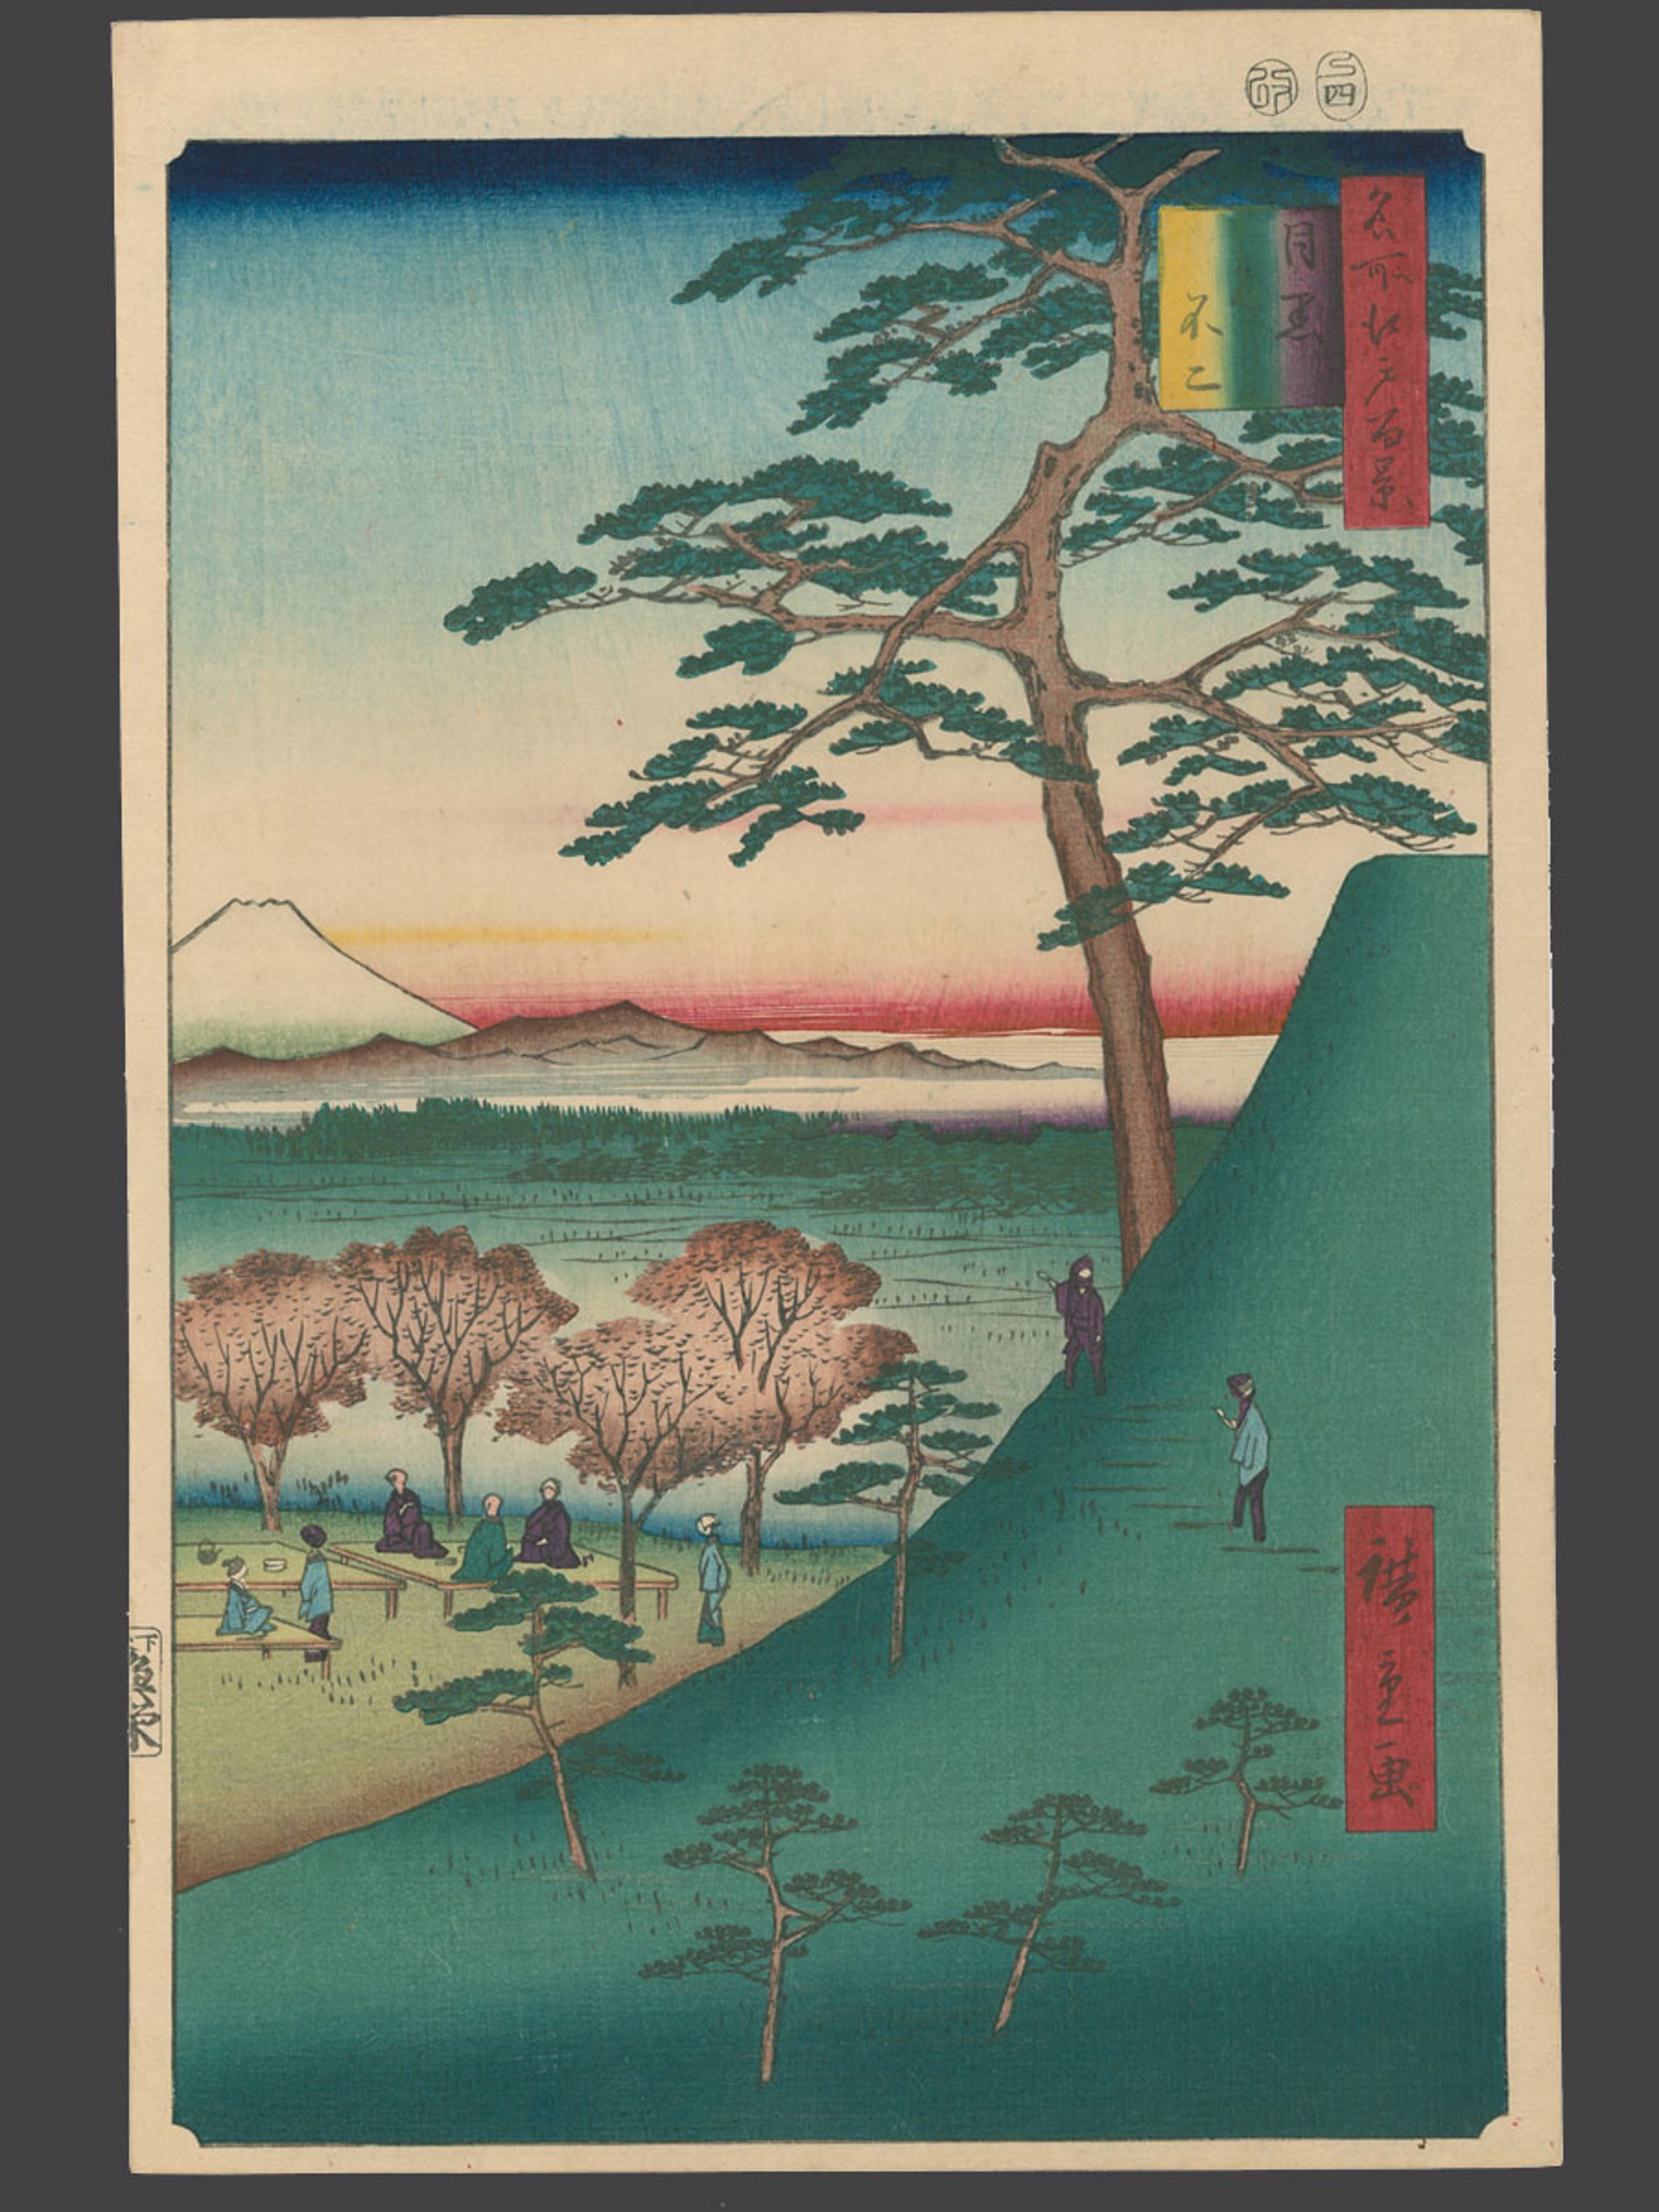 #25 The Old Fuji at Meguro 100 Views of Edo by Hiroshige